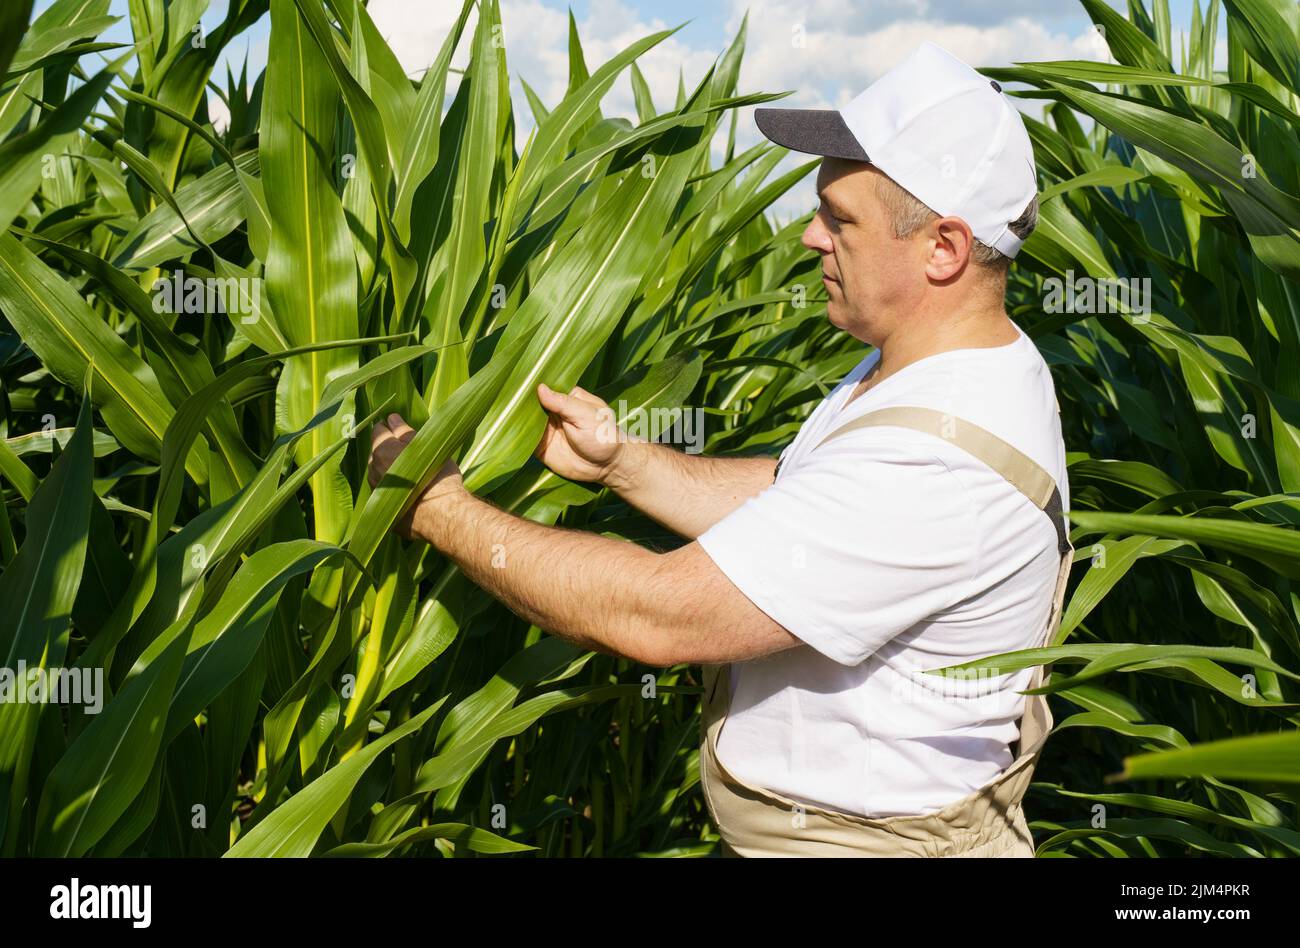 Ein Landwirt inspiziert ein Feld mit wachsendem Mais, schaut auf die Blätter. Agro-industrielles Konzept. Stockfoto